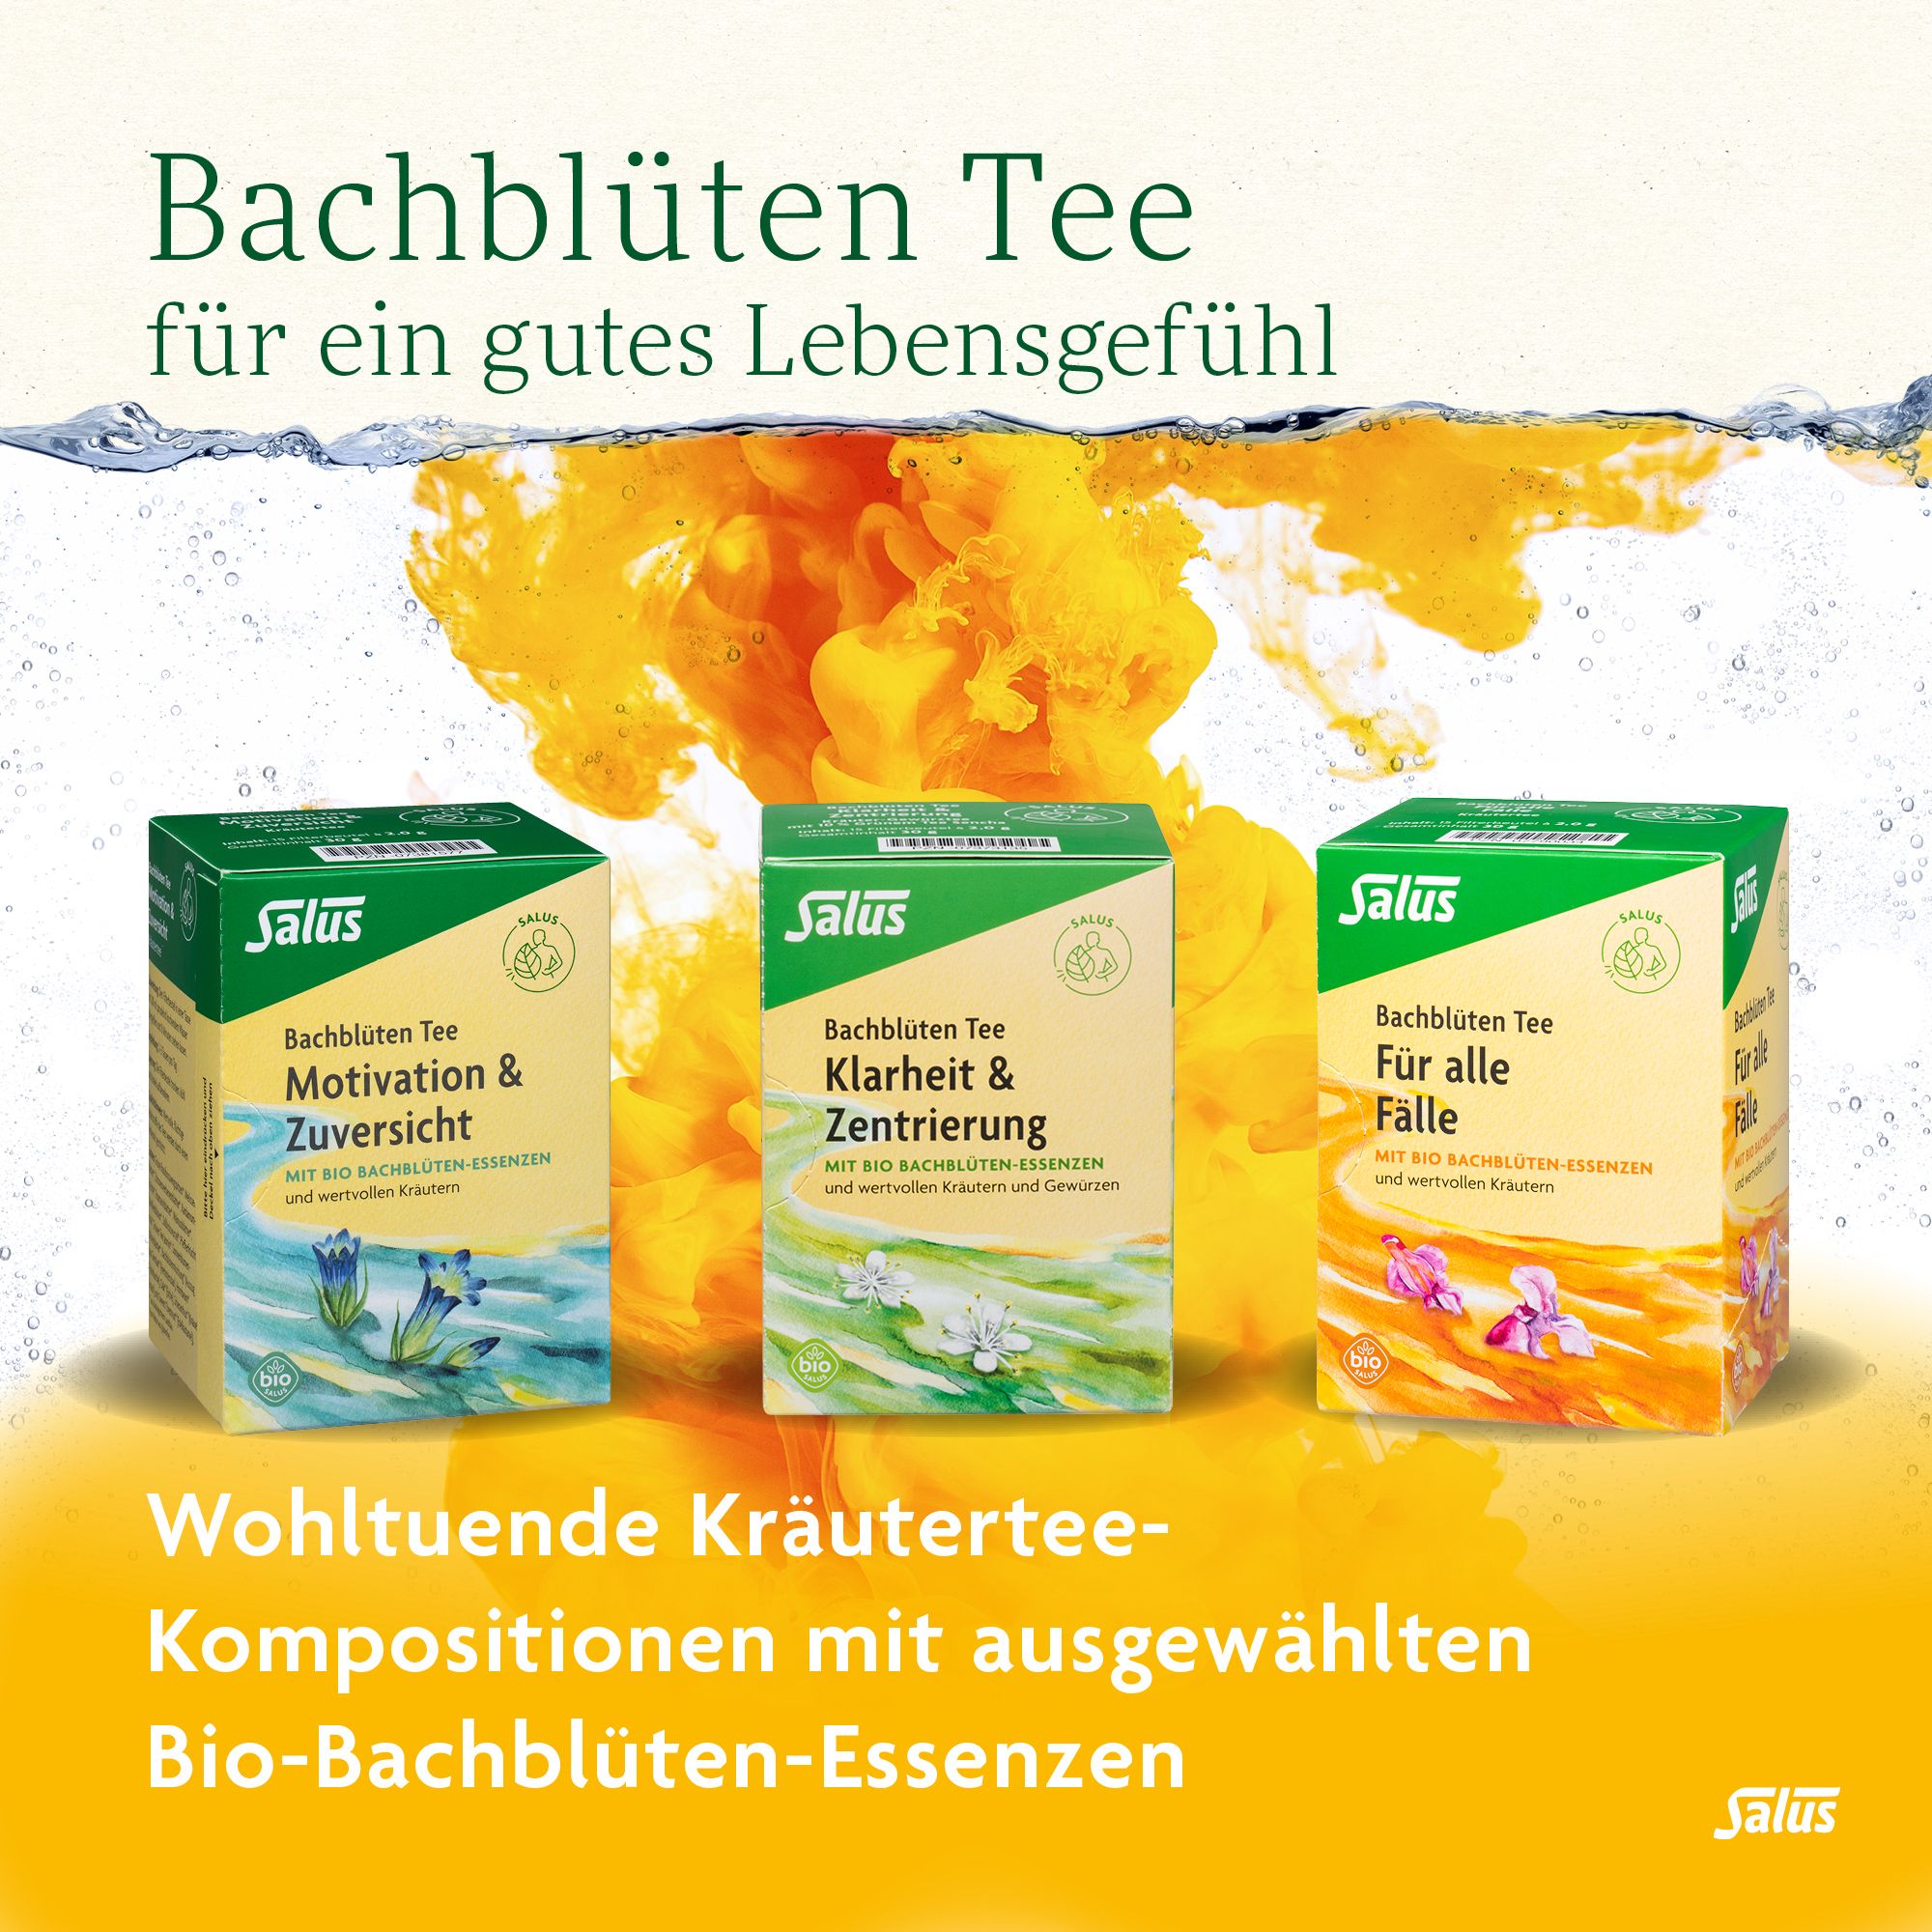 Salus® Bachblüten-Kräutertee Ruhe & Gelassenheit